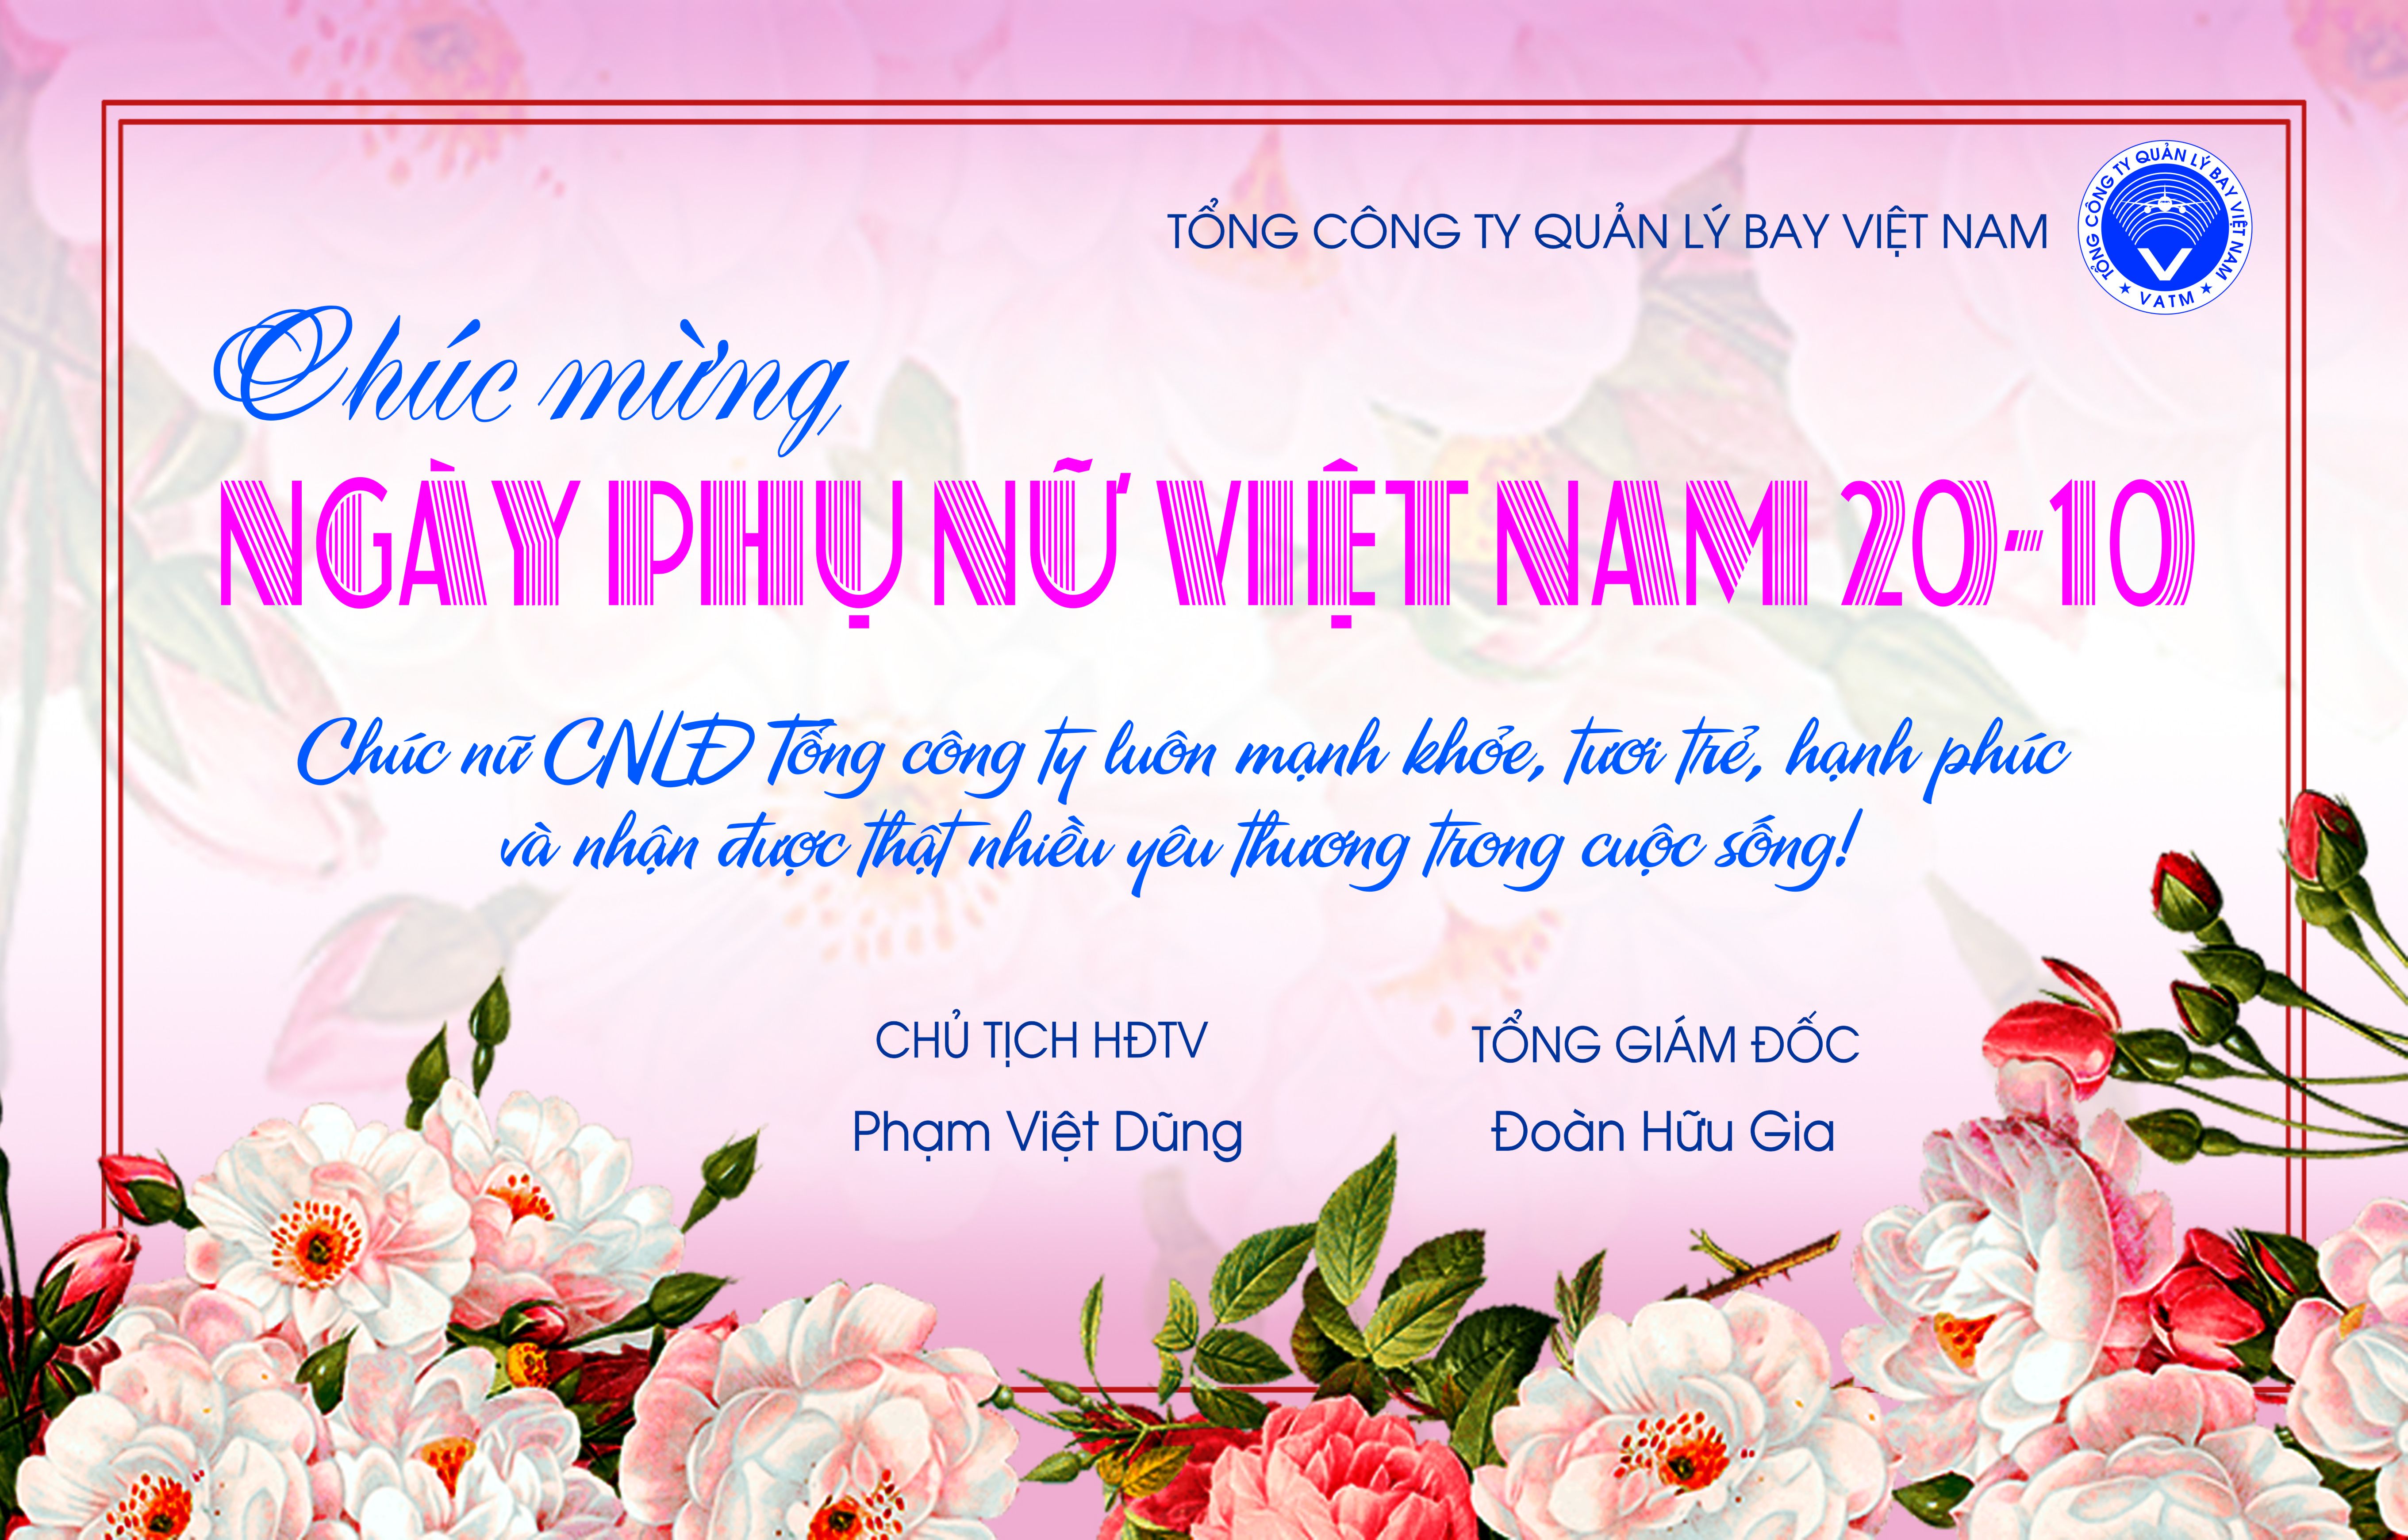 Ngày Phụ nữ Việt Nam 20-10: Chúc mừng Ngày Phụ nữ Việt Nam 20-10! Đây là ngày để tôn vinh và gửi lời tri ân đến những người phụ nữ đáng kính trong cuộc sống của chúng ta. Hãy xem hình ảnh liên quan để cùng nhau tưởng niệm và bày tỏ lòng trân quý với những bà, mẹ, vợ và chị em của chúng ta.